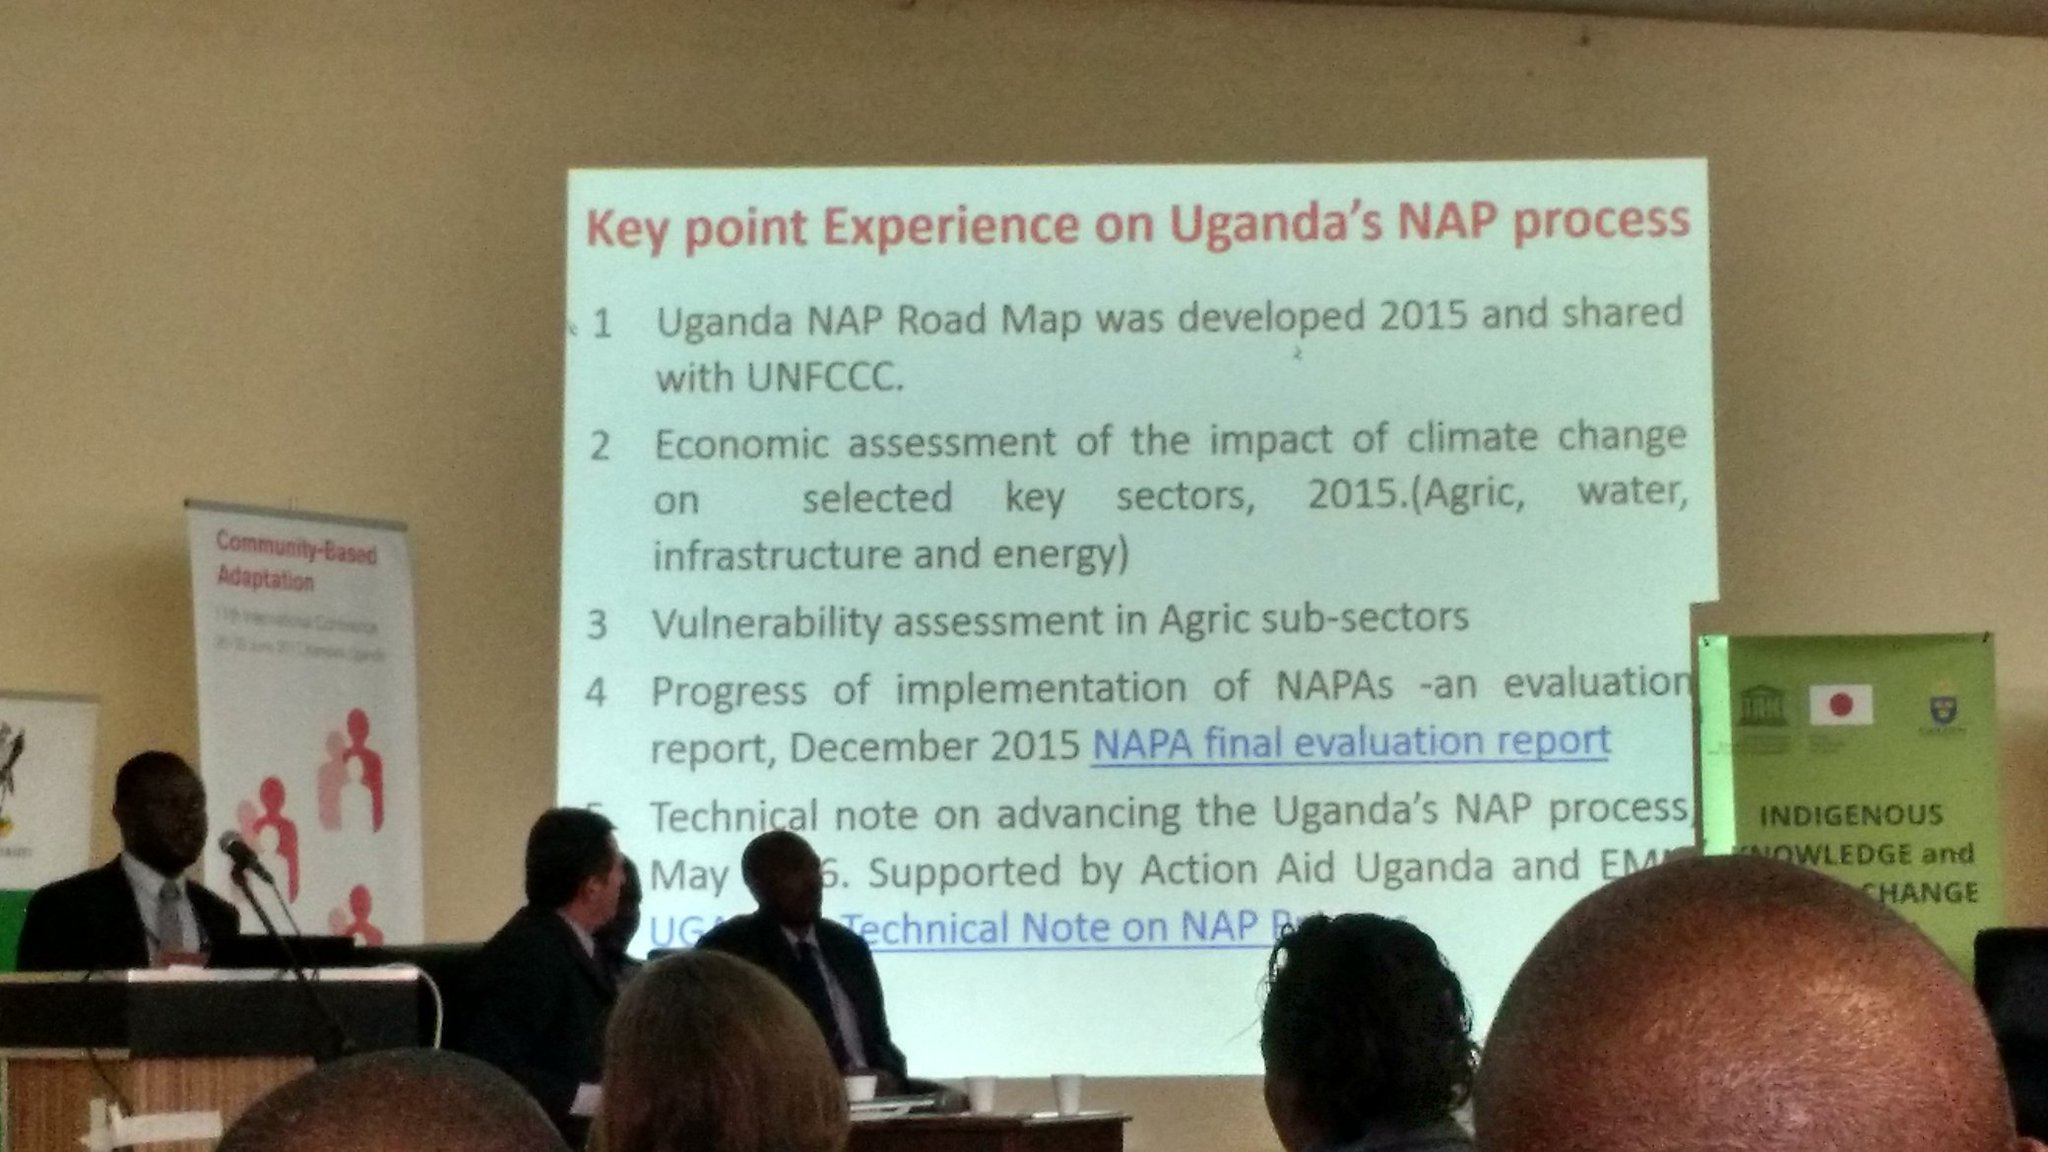 Uganda makes progress on #NAP process #CBA11 #NAPexpo https://t.co/6EHe9cAHvx